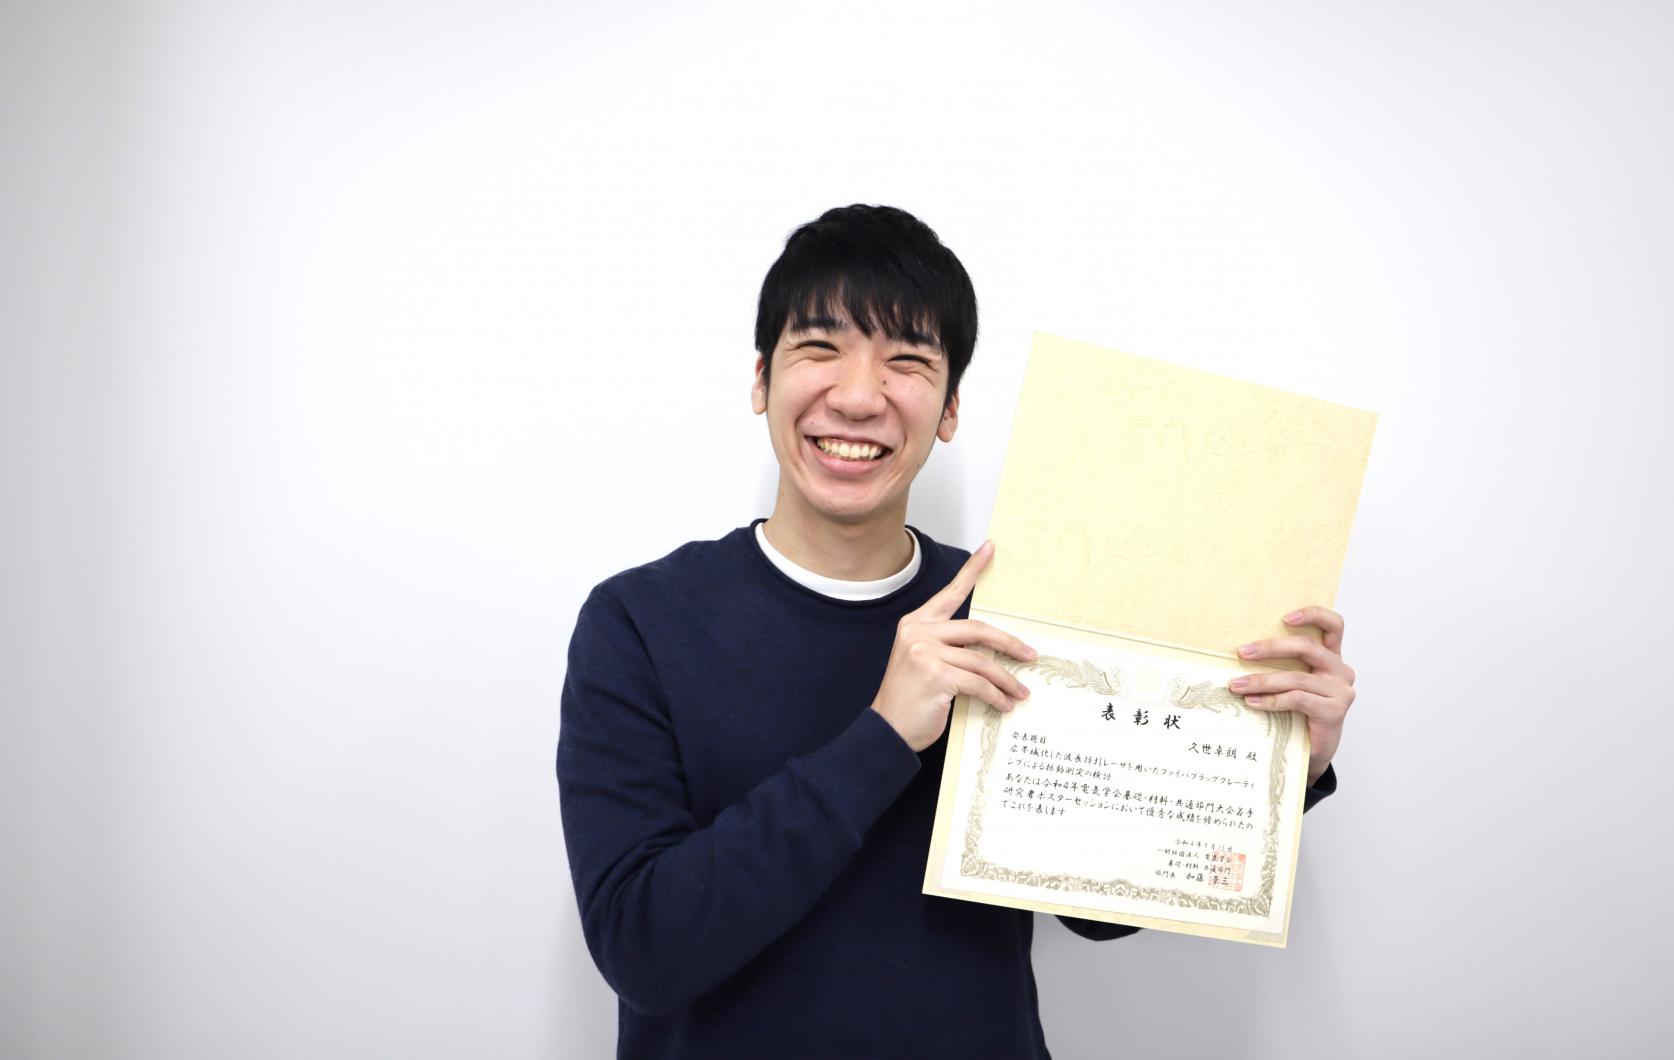 電気工学専攻博士前期課程2年久世卓朗さんが、電気学会A部門大会にて、「若手優秀ポスター賞」を受賞しました。